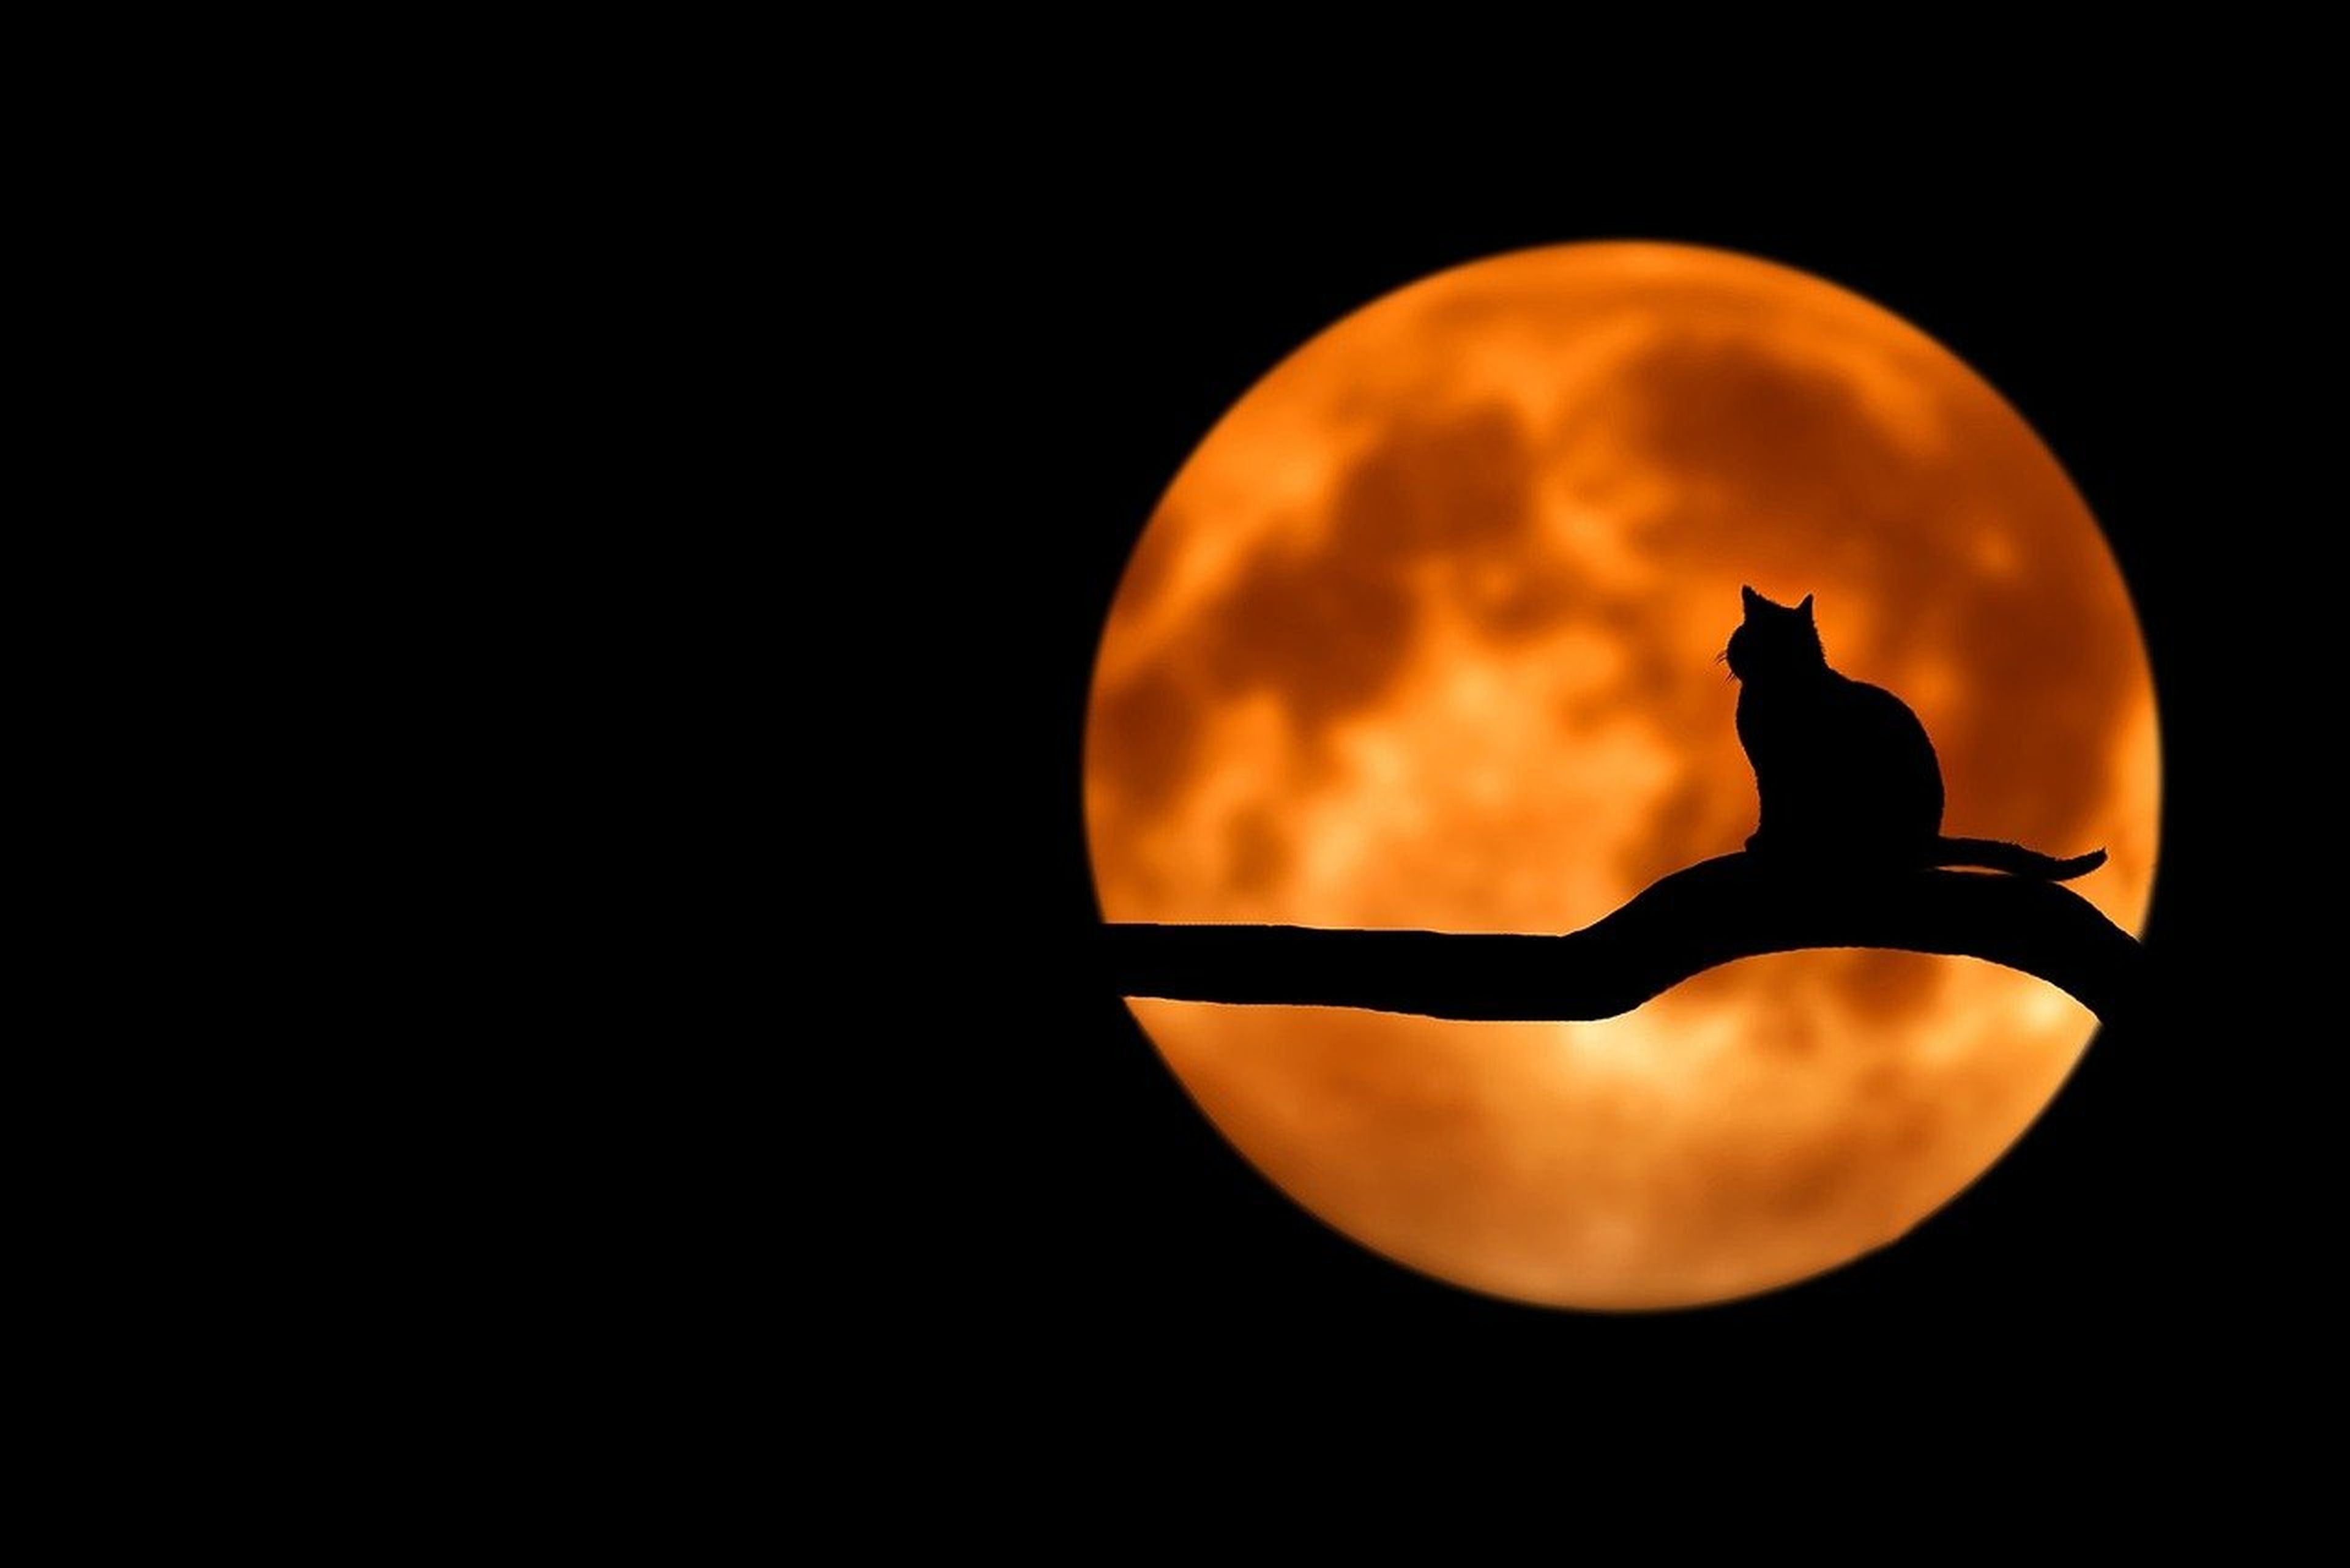 La silueta de un gato sobre un árbol se refleja en la luna.